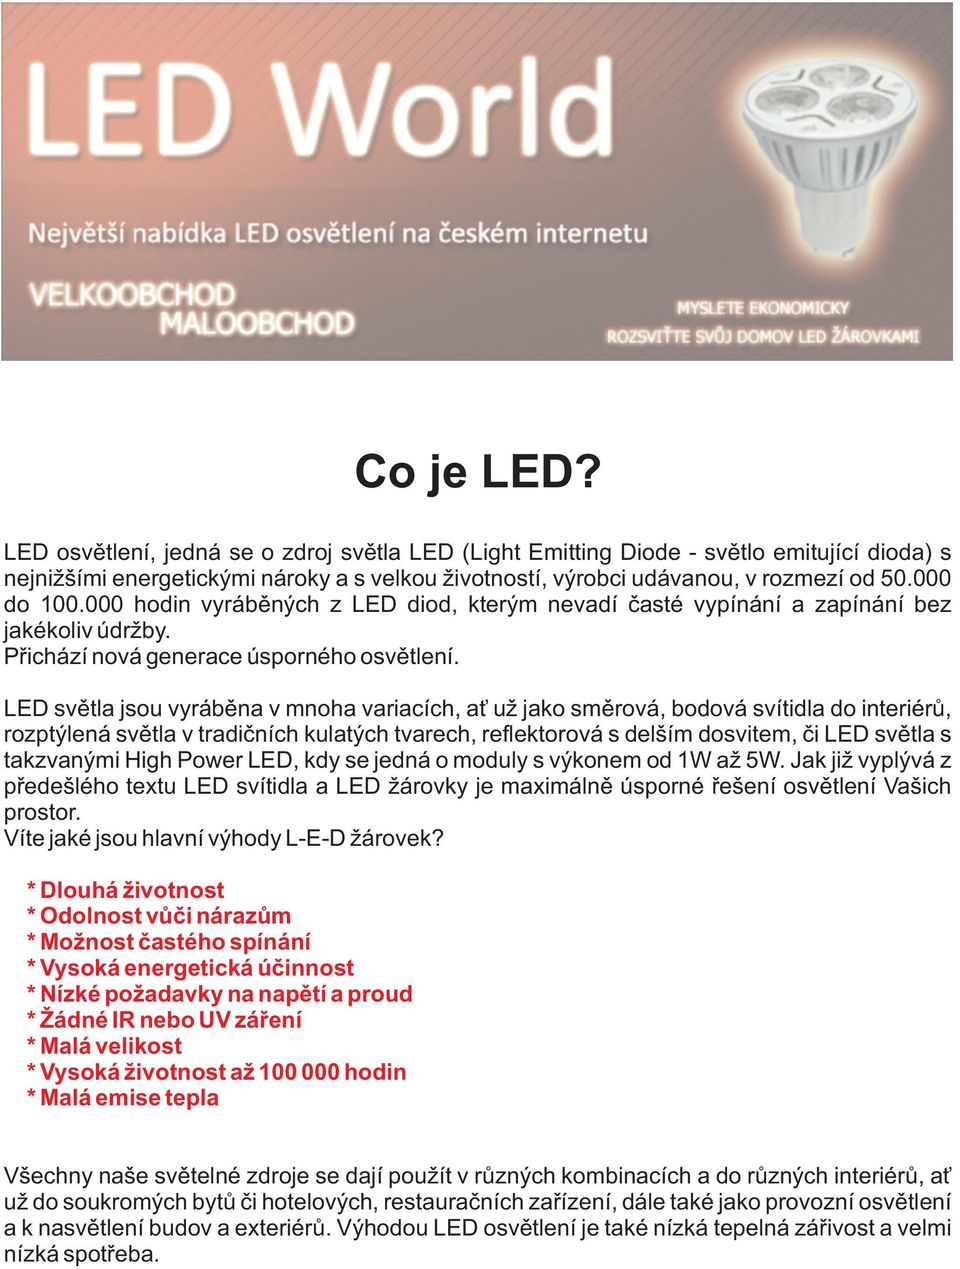 LED světla jsou vyráběna v mnoha variacích, ať už jako směrová, bodová svítidla do interiérů, rozptýlená světla v tradičních kulatých tvarech, reflektorová s delším dosvitem, či LED světla s